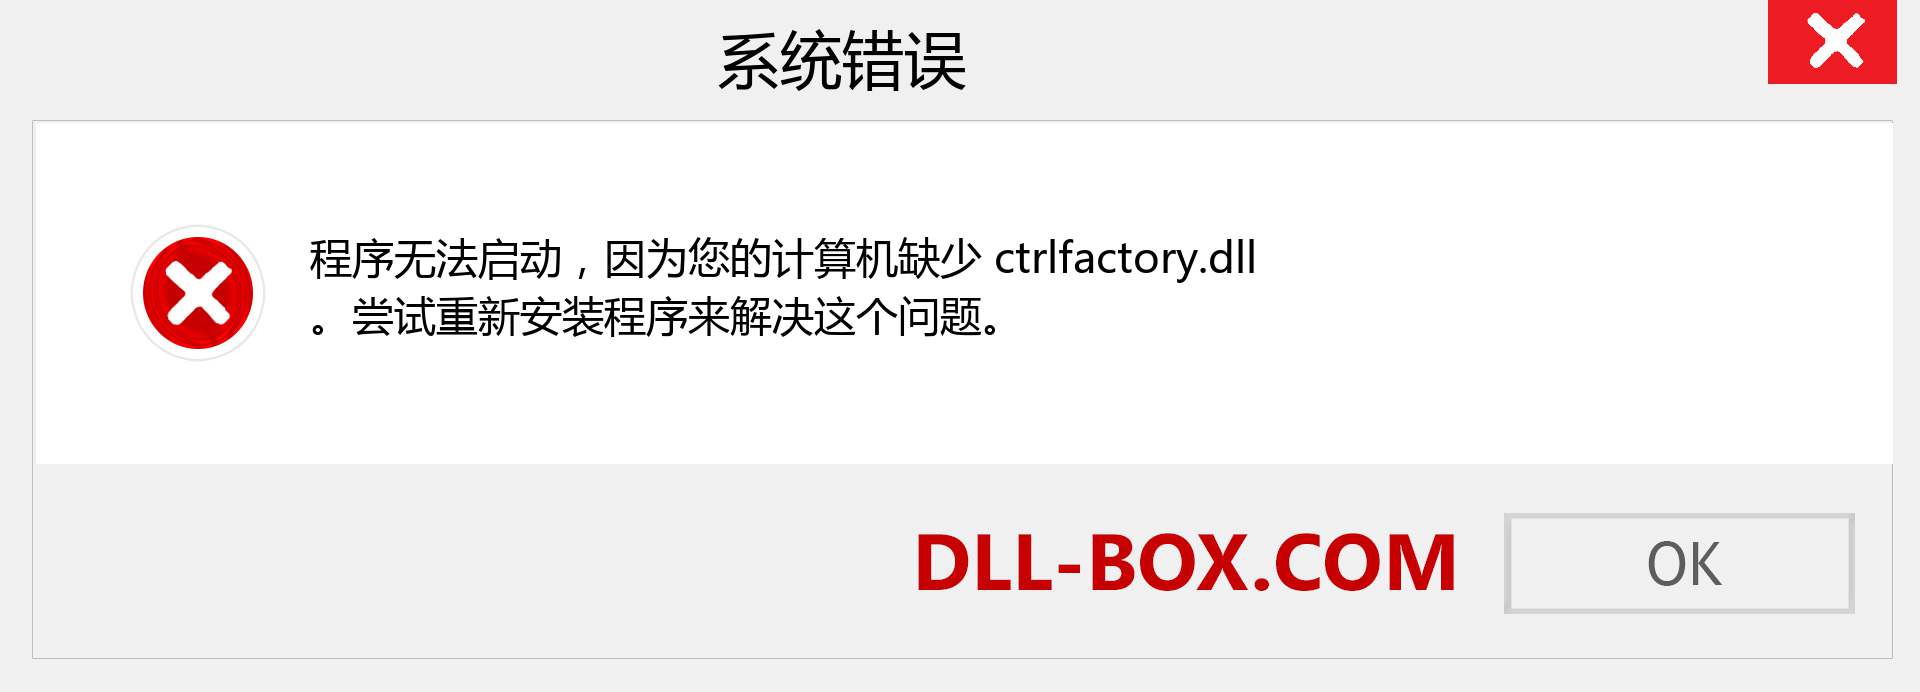 ctrlfactory.dll 文件丢失？。 适用于 Windows 7、8、10 的下载 - 修复 Windows、照片、图像上的 ctrlfactory dll 丢失错误